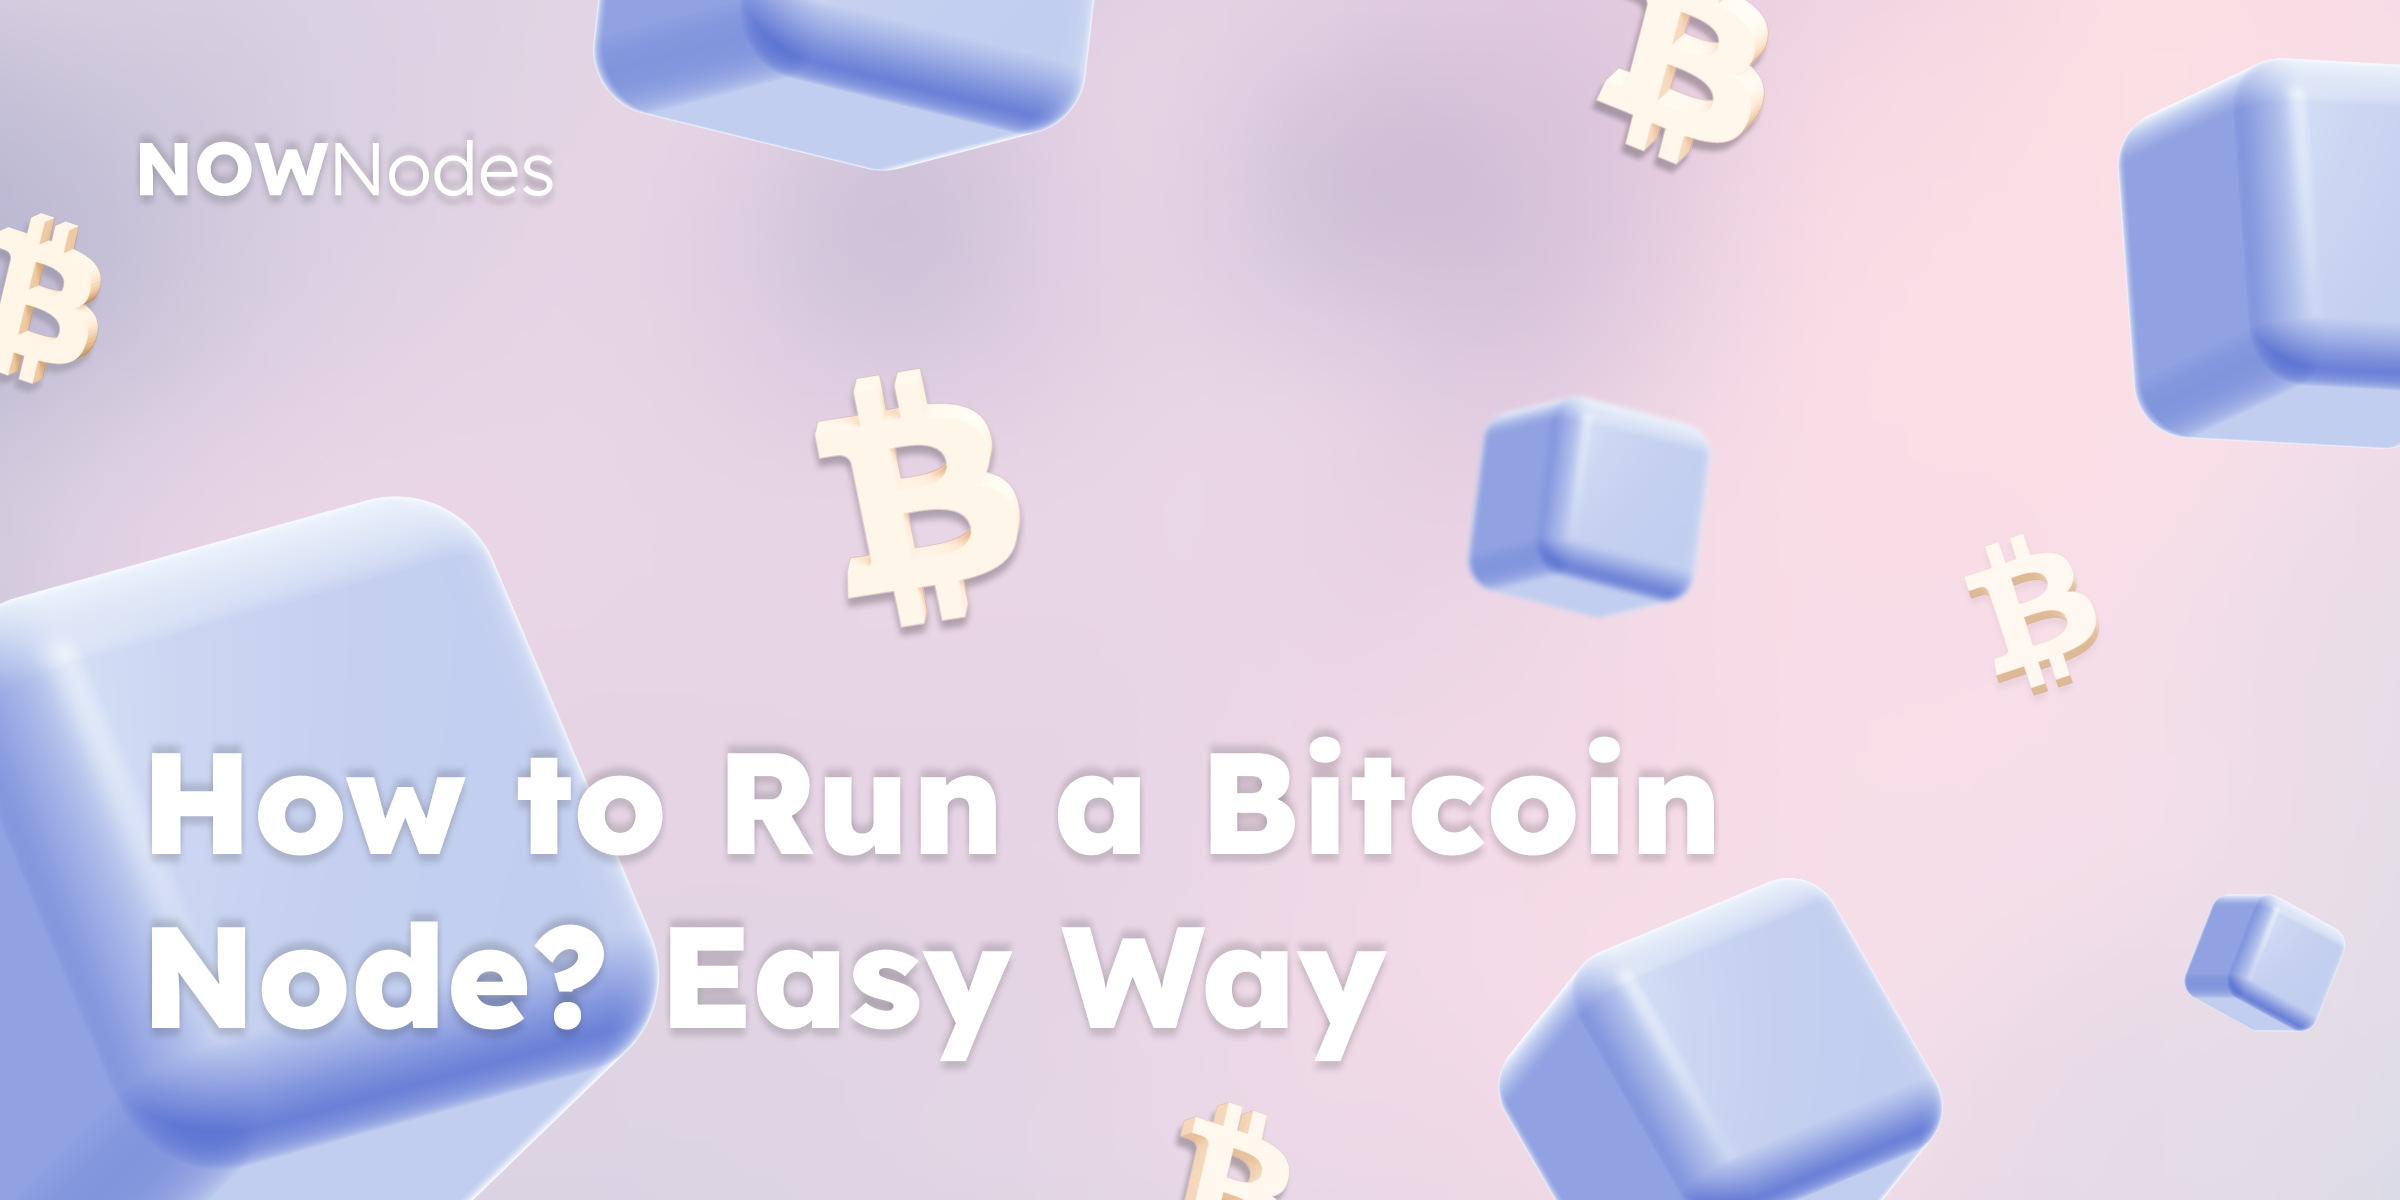 NOWNodes How to Run a Bitcoin Node? Easy way